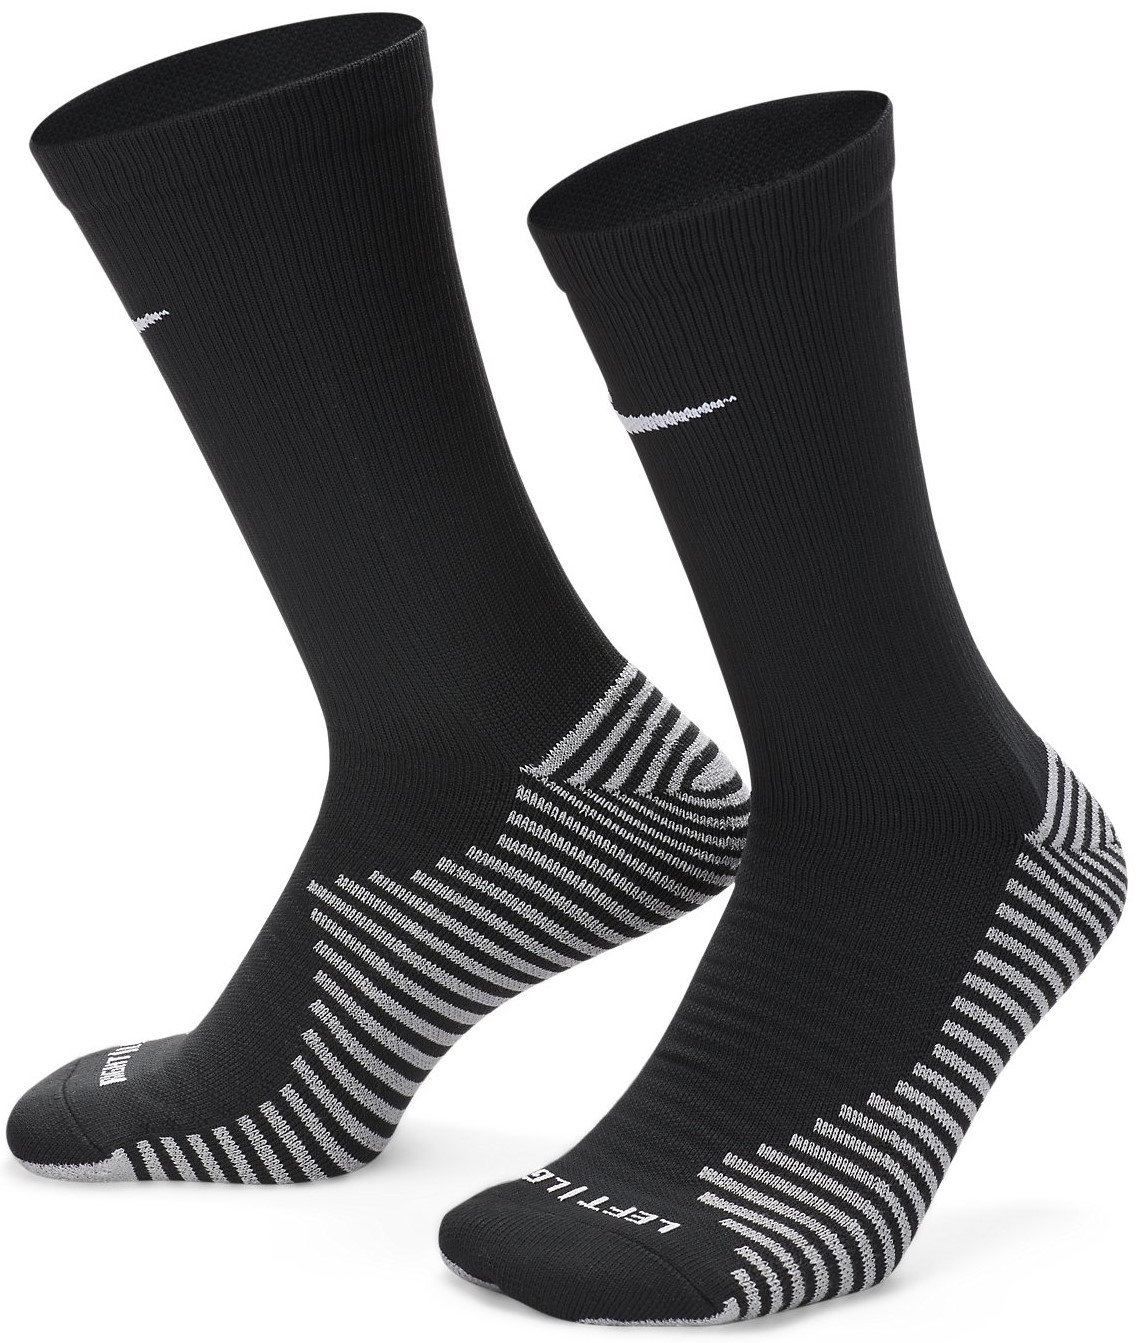 Nike Grip Strike Lightweight Crew Socks - Mens Clothing - Socks -  Black/Anthracite/White